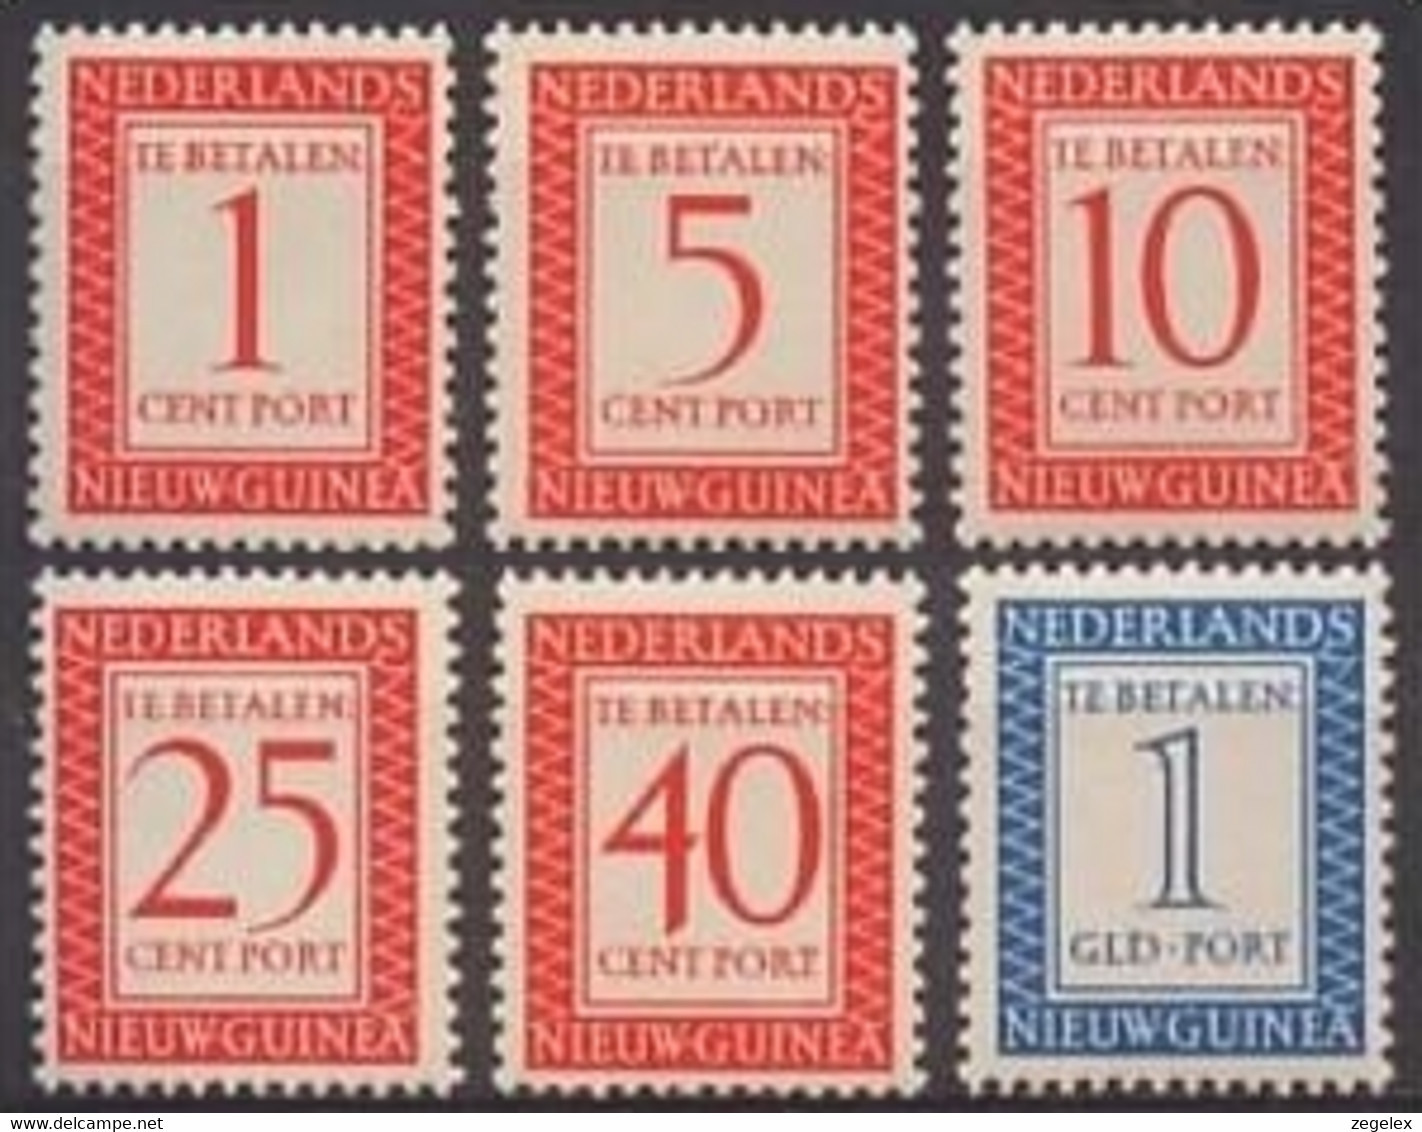 Nederlands Nieuw Guinea 1957 - PORT Cijfers NVPH P1-P6 Ongestempeld/met Plakker, Hinged - Netherlands New Guinea